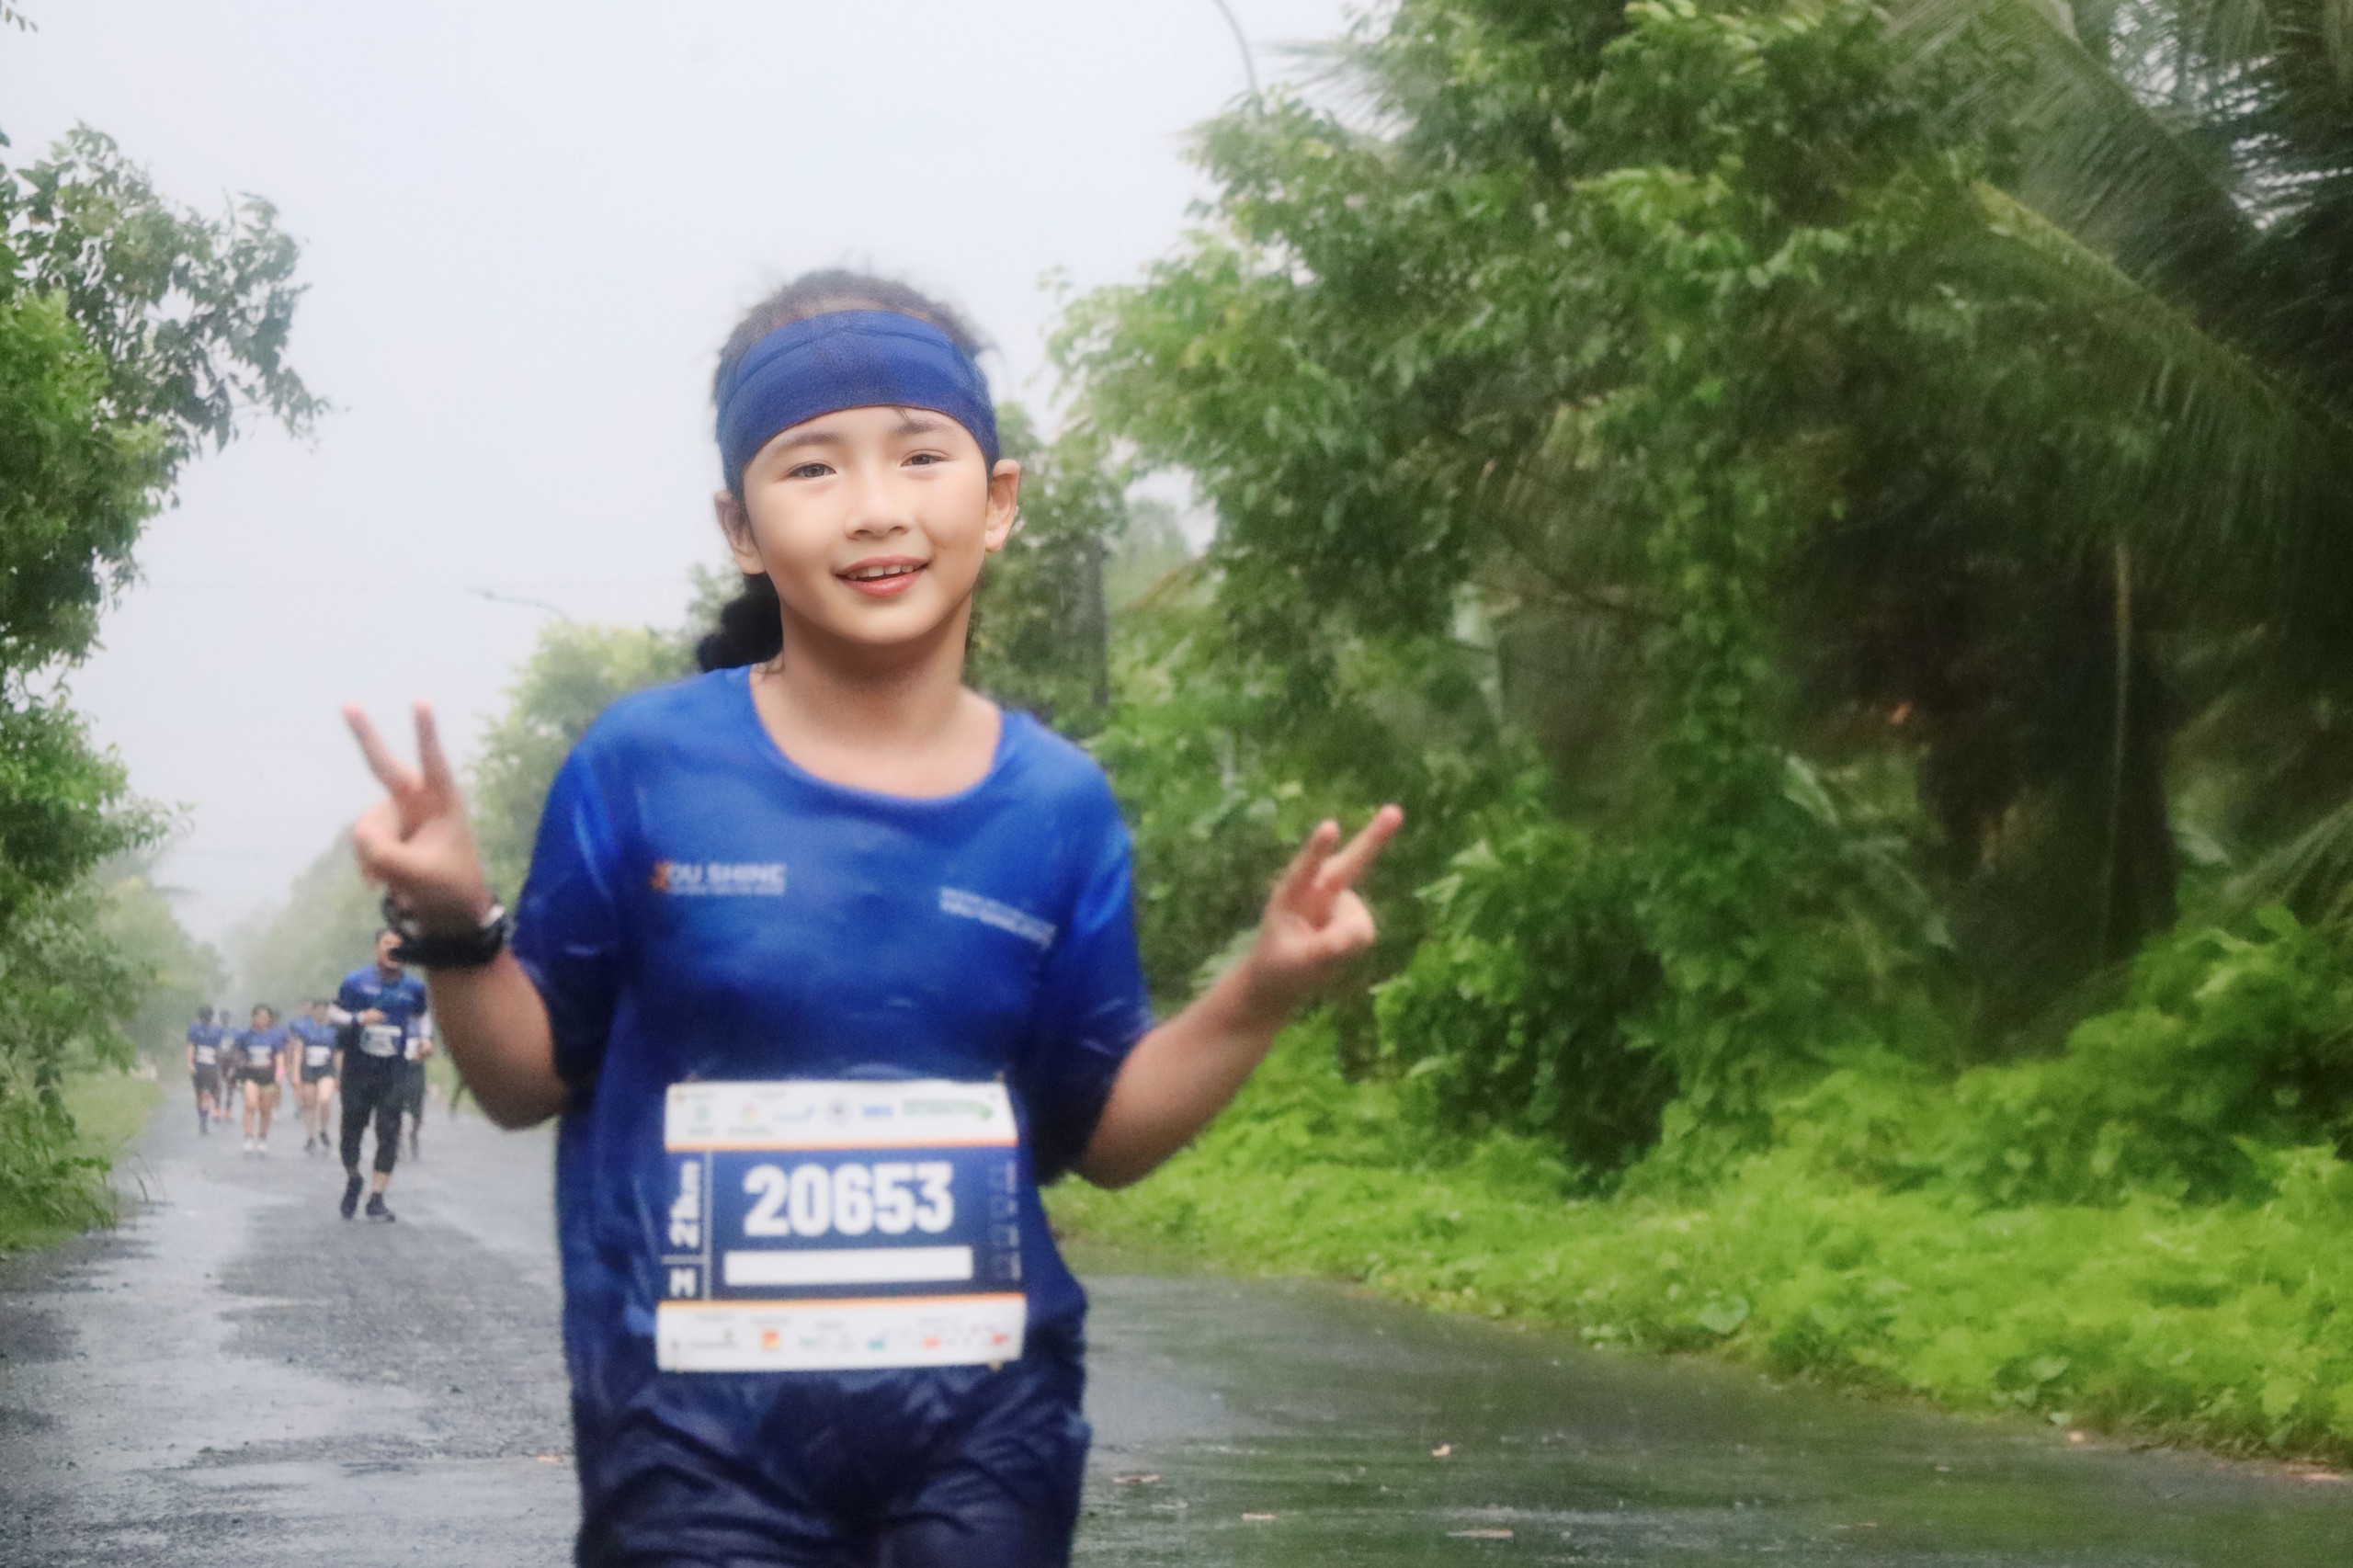 Em Nguyễn Thy Ca - 8 tuổi tham gia đường chạy 21km, đã tham gia 35 giải chạy trên toàn quốc nên thời tiết không là trở ngại khó đối với em.